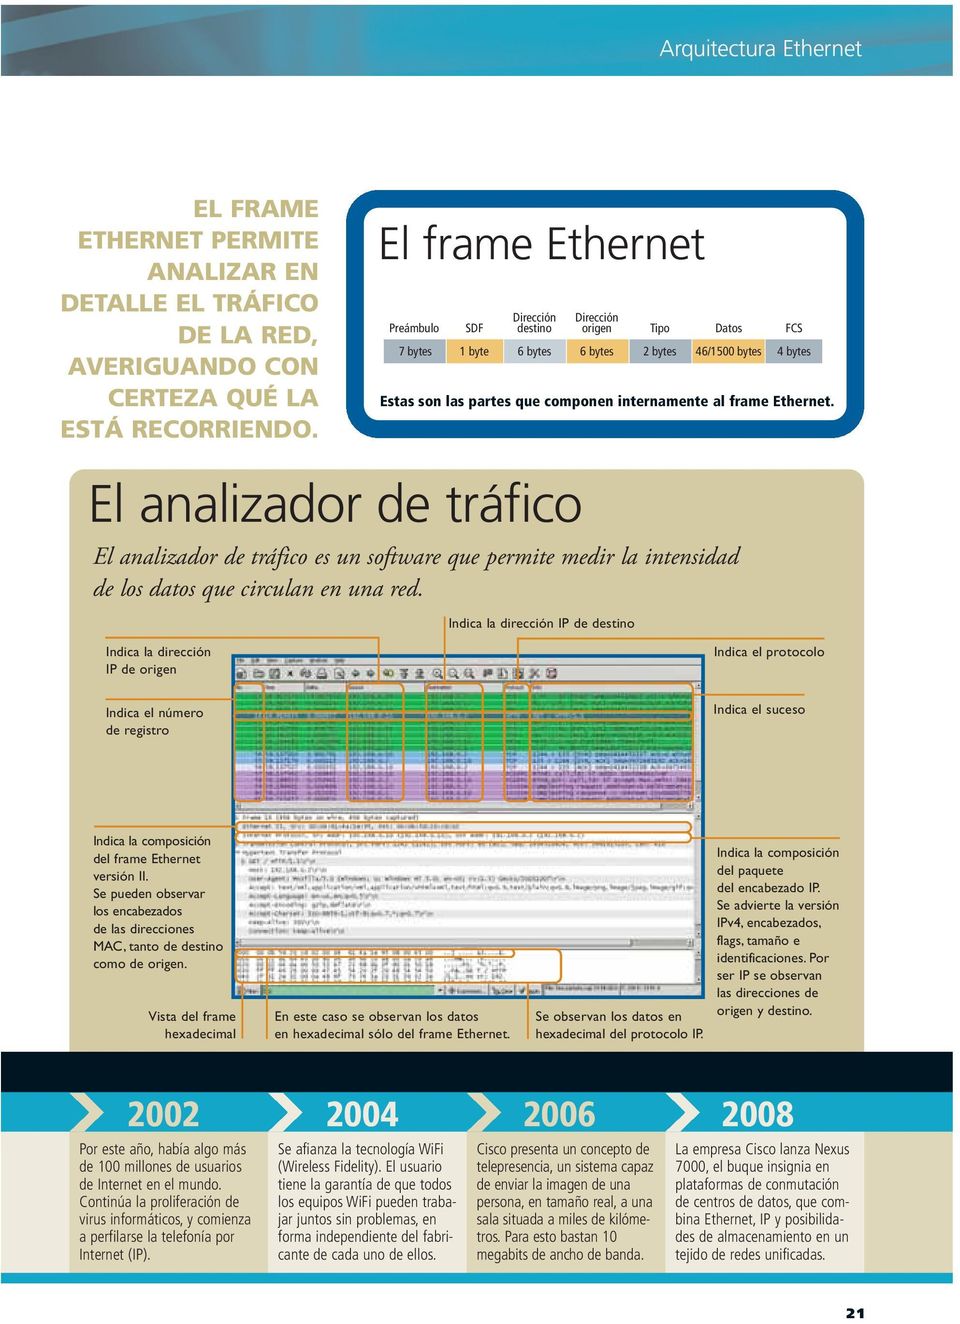 Ethernet. El analizador de tráfico El analizador de tráfico es un software que permite medir la intensidad de los datos que circulan en una red.